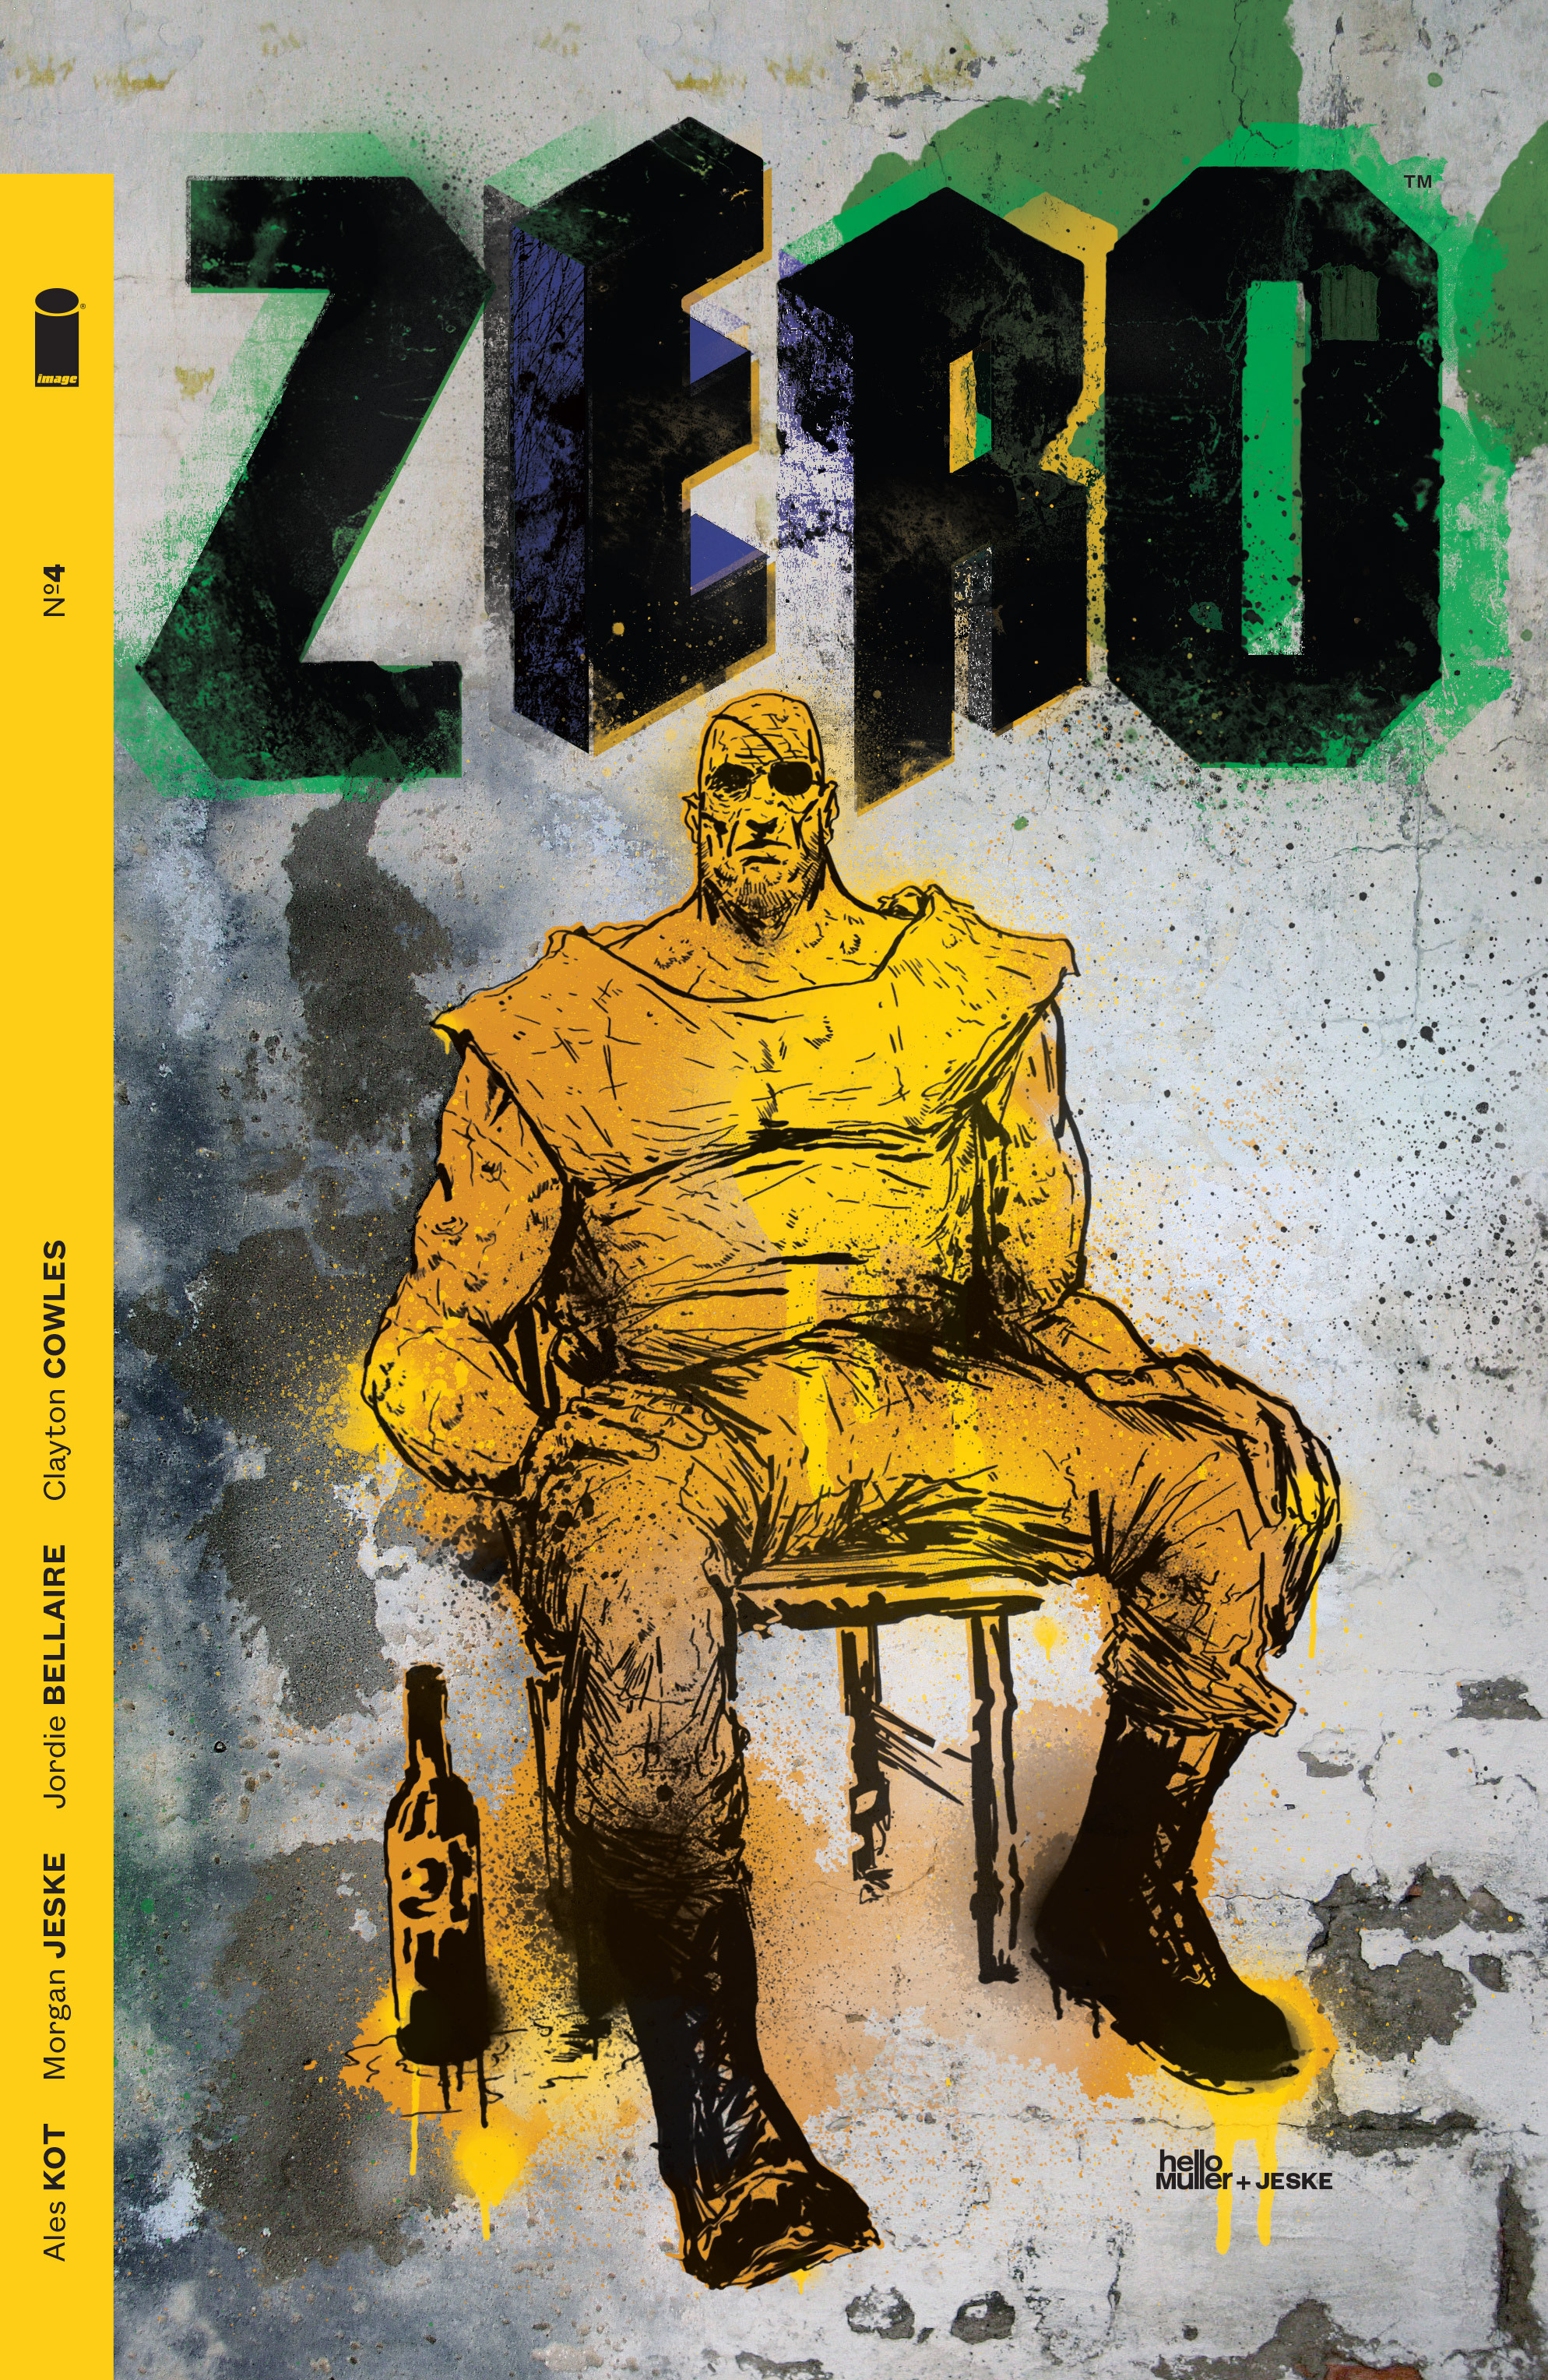 Read online Zero comic -  Issue #4 - 1